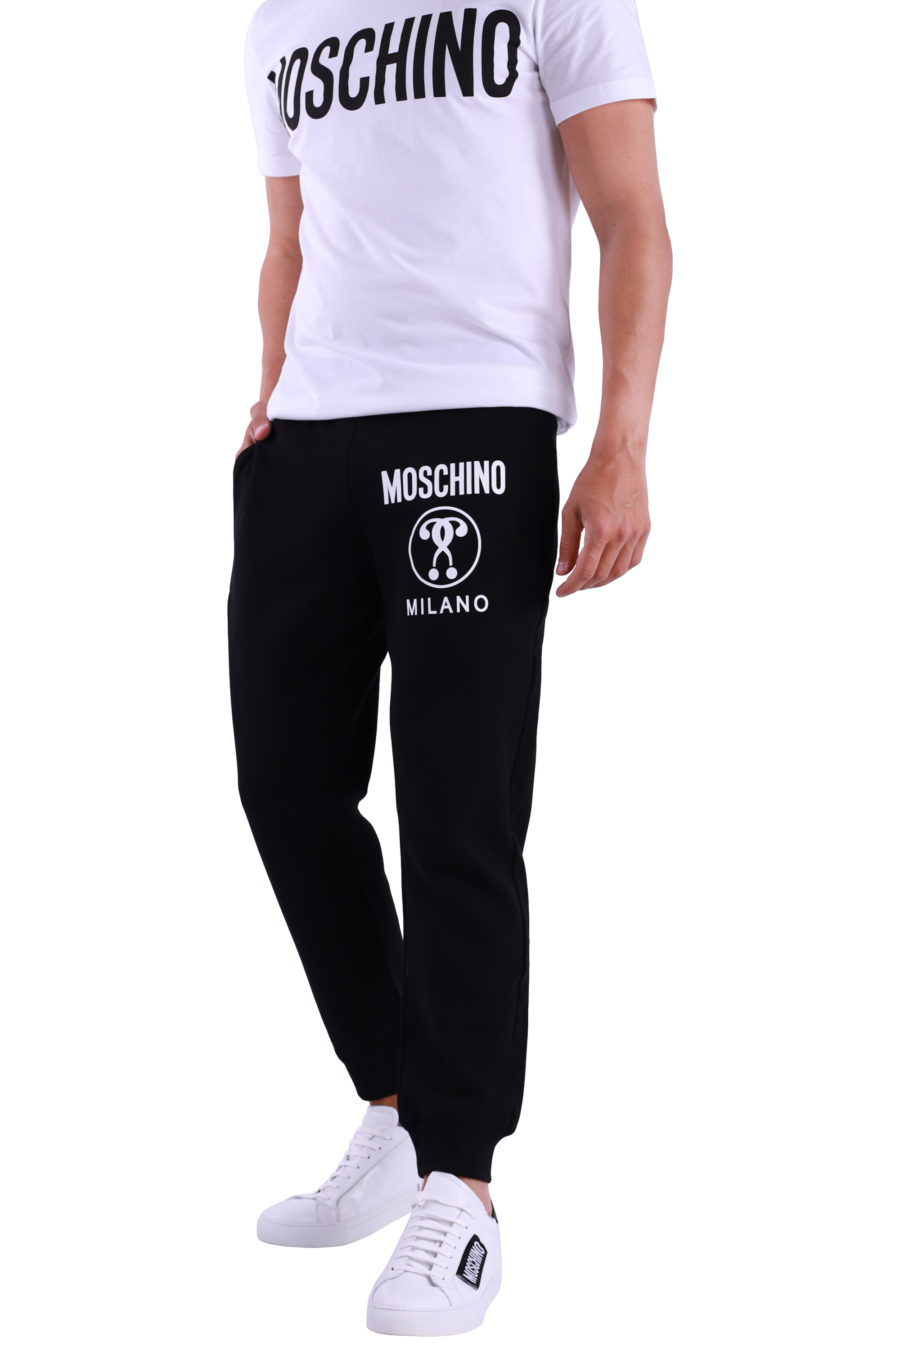 Pantalón Moschino Couture negro con logo grande - IMG 4750